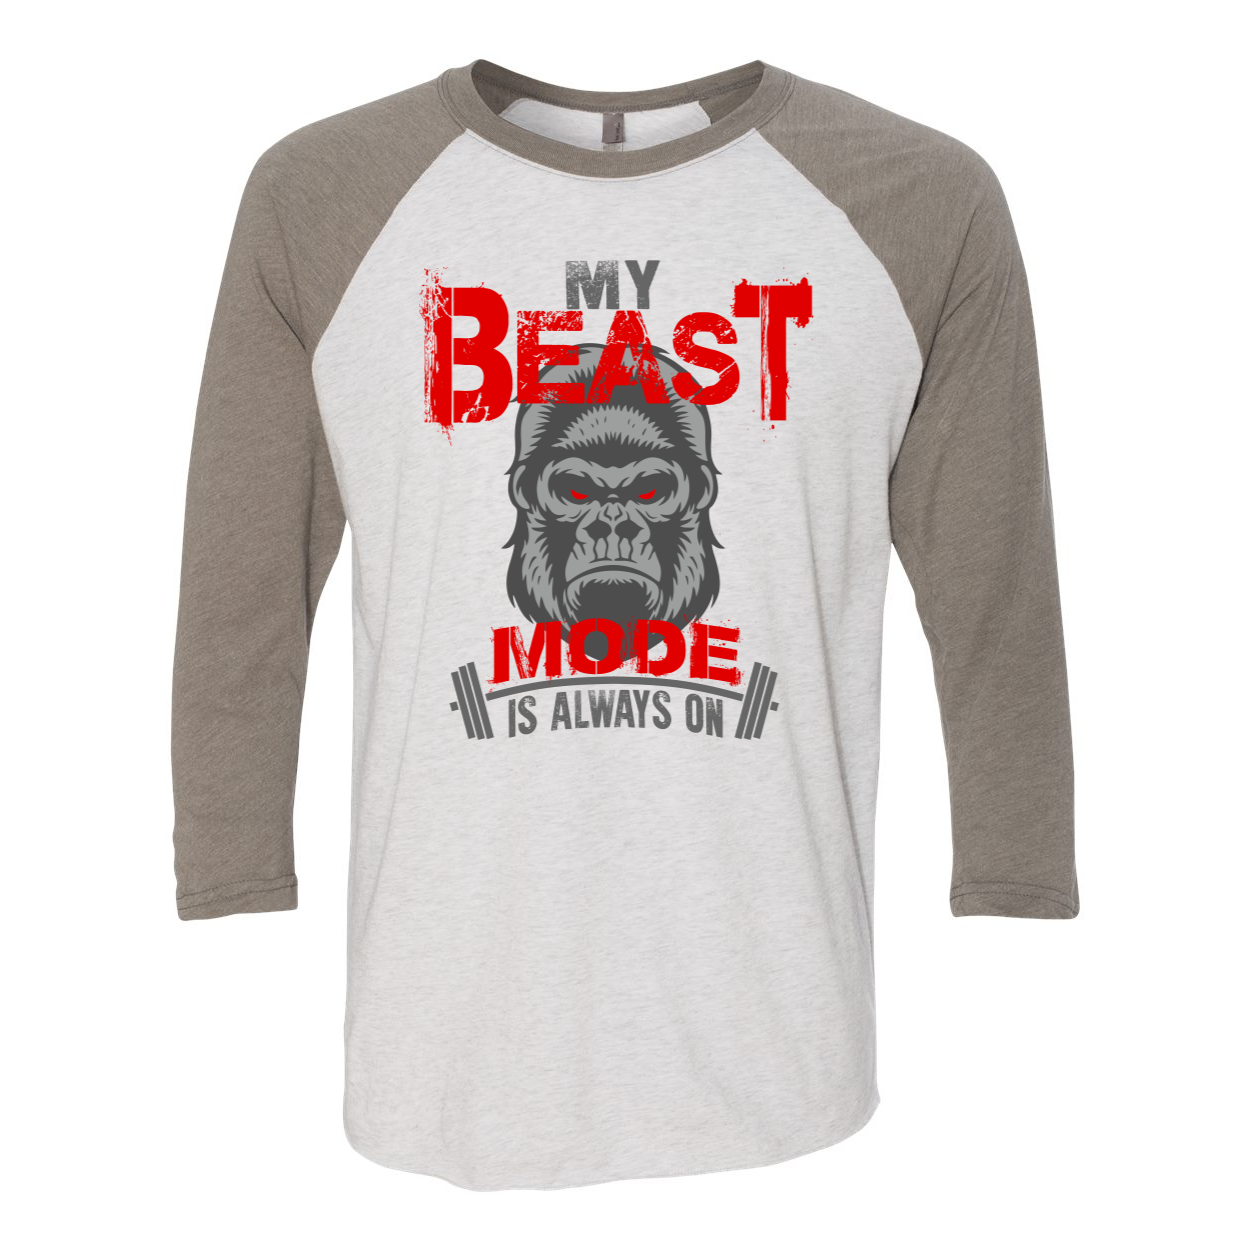 Mein Beast Mode Baseball-Raglan-T-Shirt